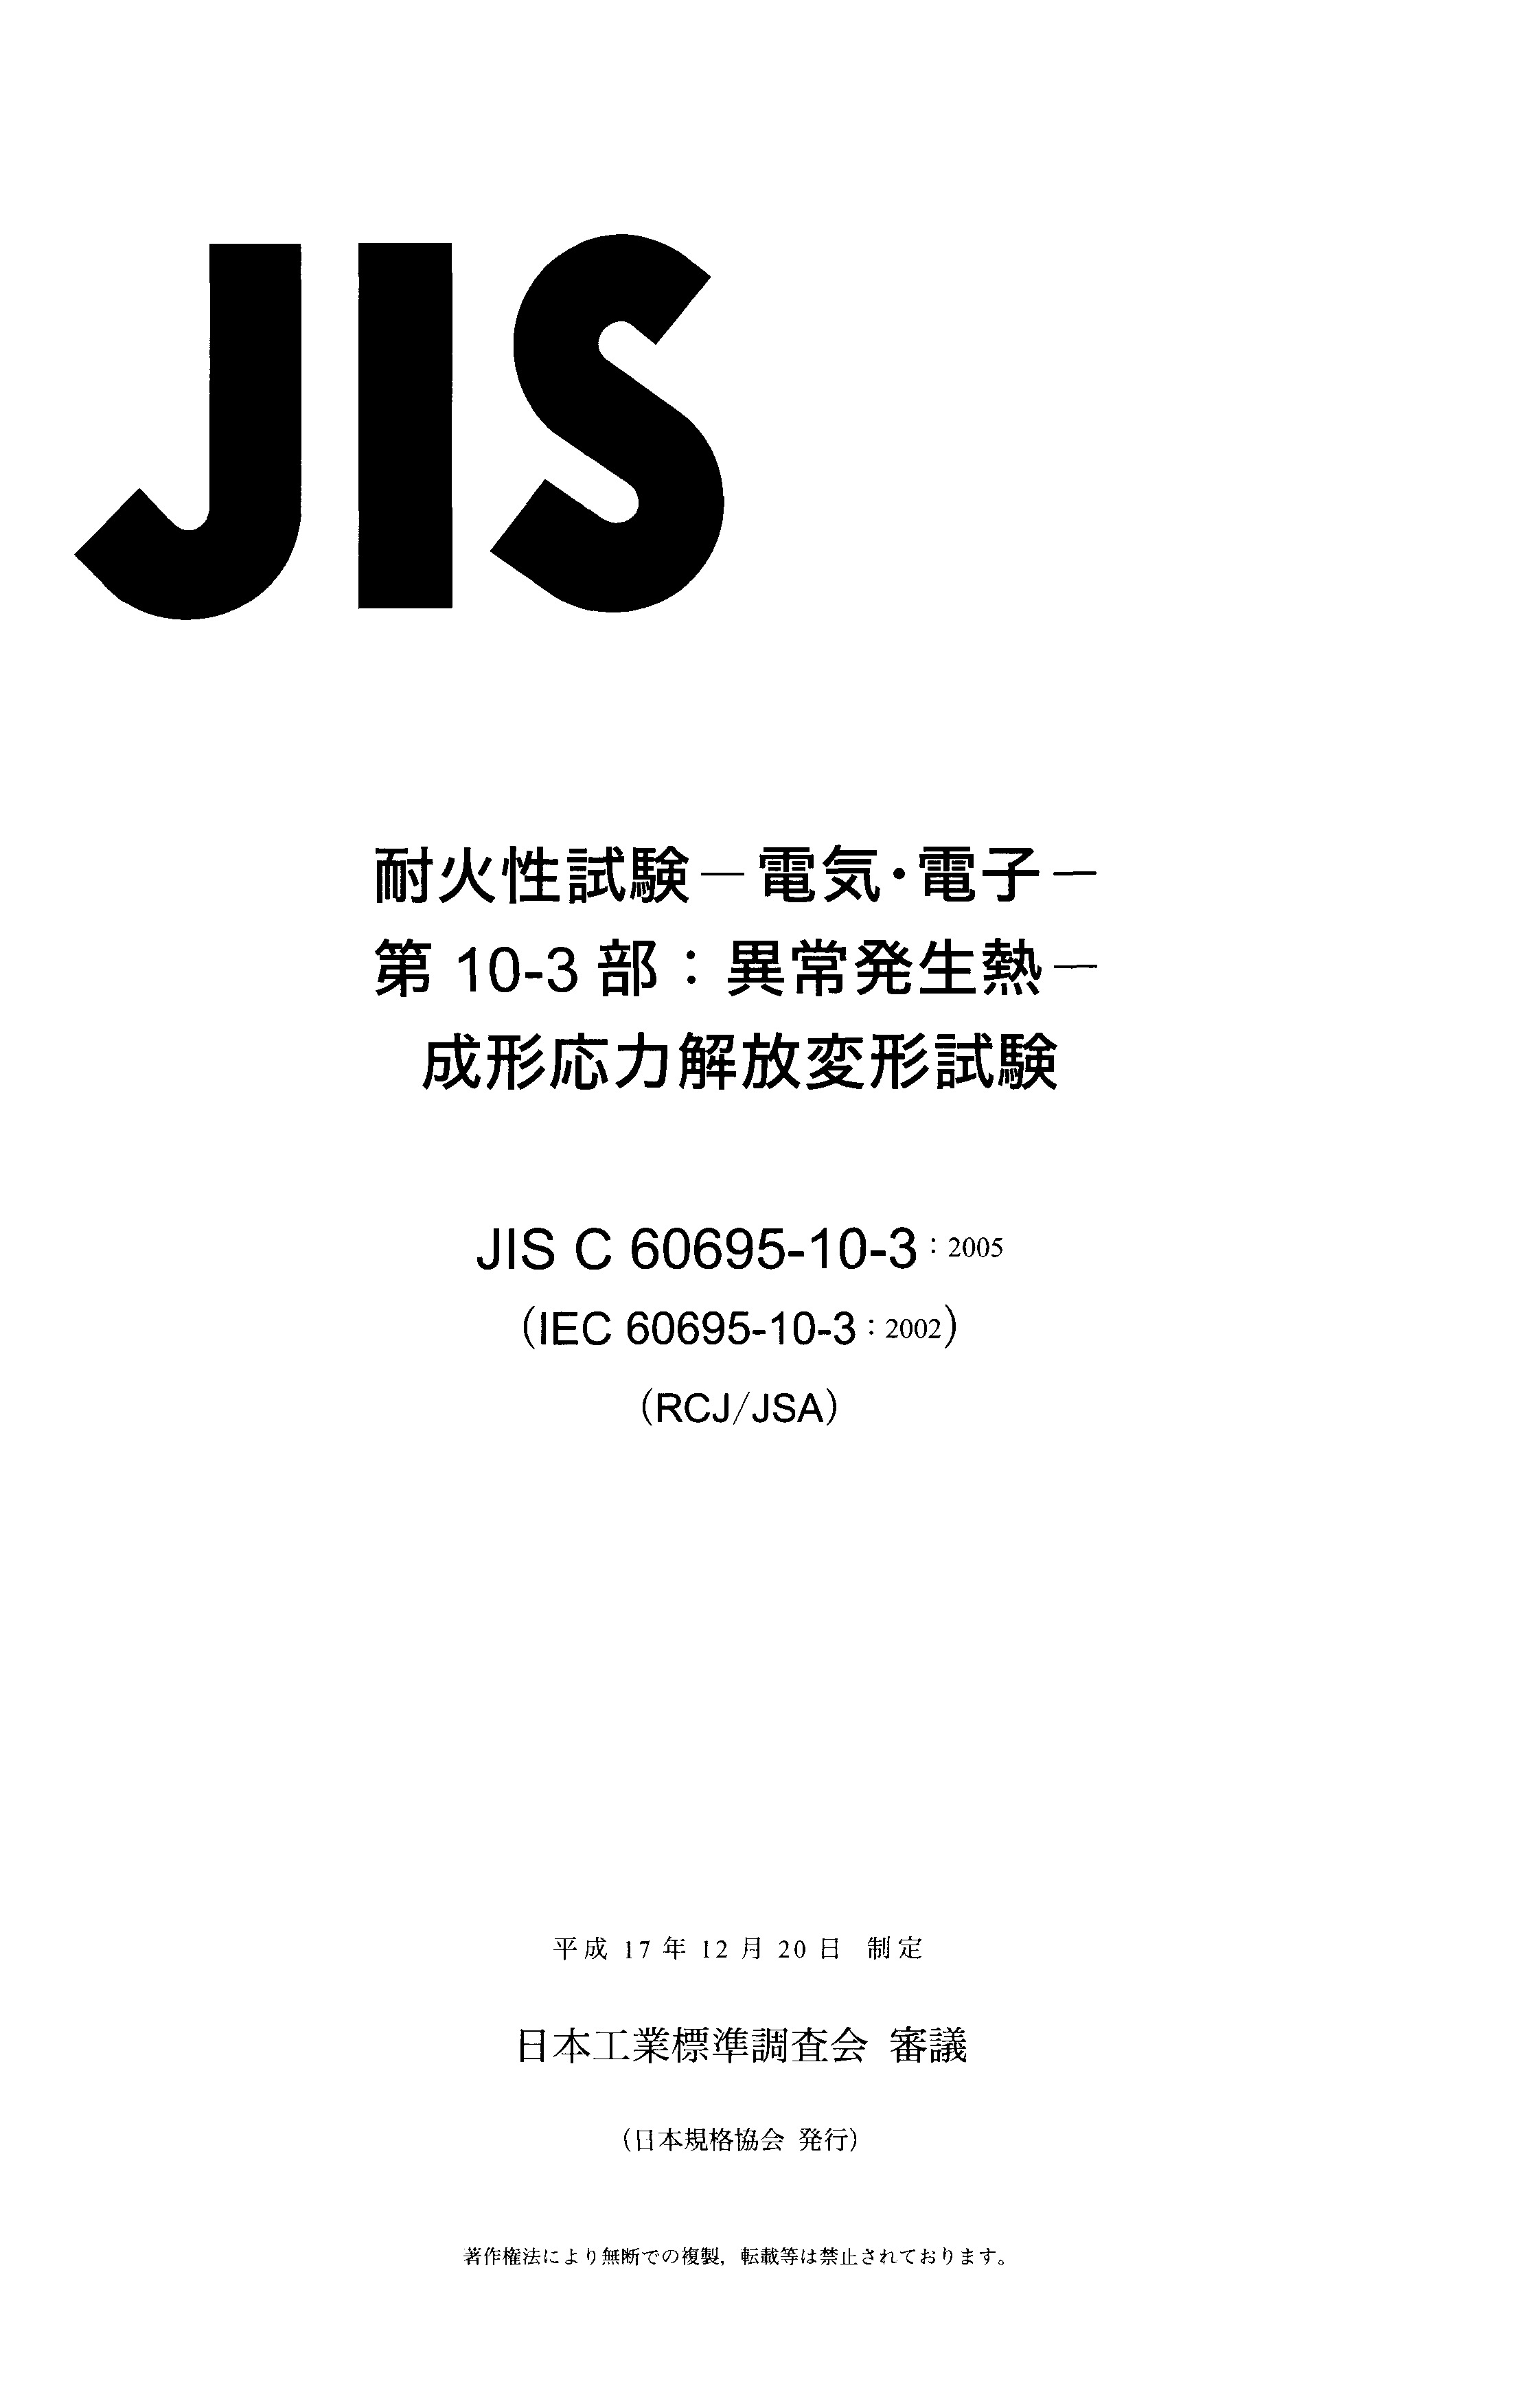 JIS C 60695-10-3:2005